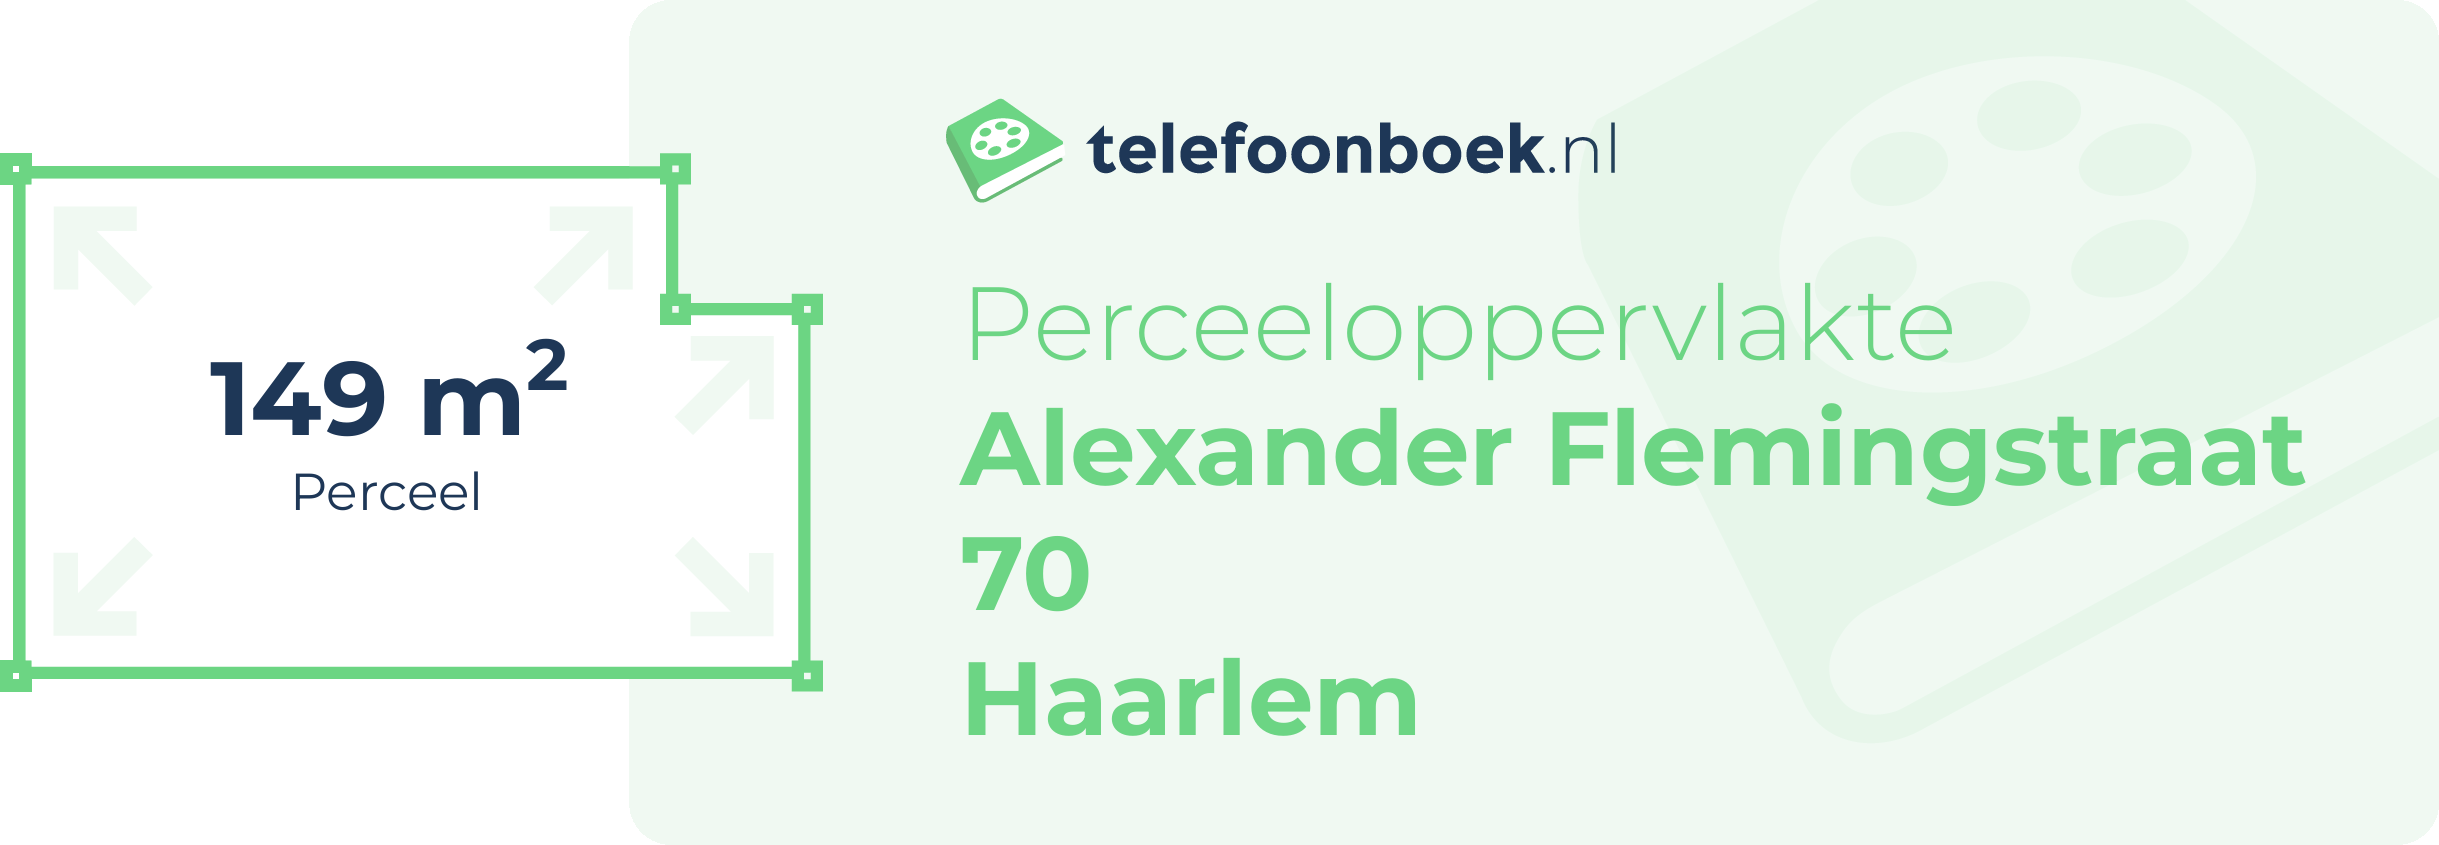 Perceeloppervlakte Alexander Flemingstraat 70 Haarlem